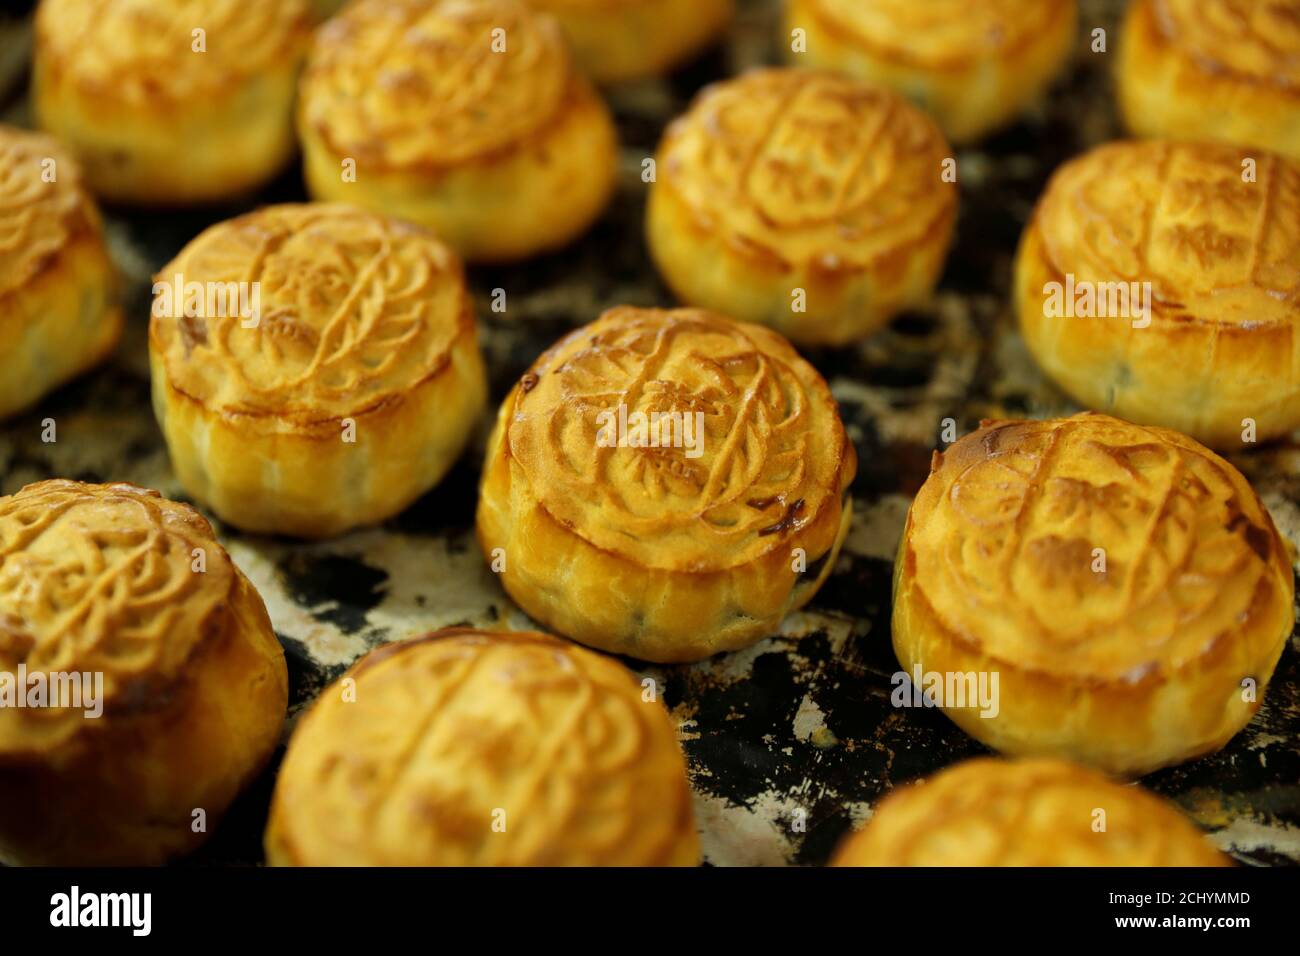 Mooncakes with Chinese words 'Hongkonger' are seen at Wah Yee Tang Bakery in Hong Kong, China July 12, 2019. REUTERS/Tyrone Siu Stock Photo